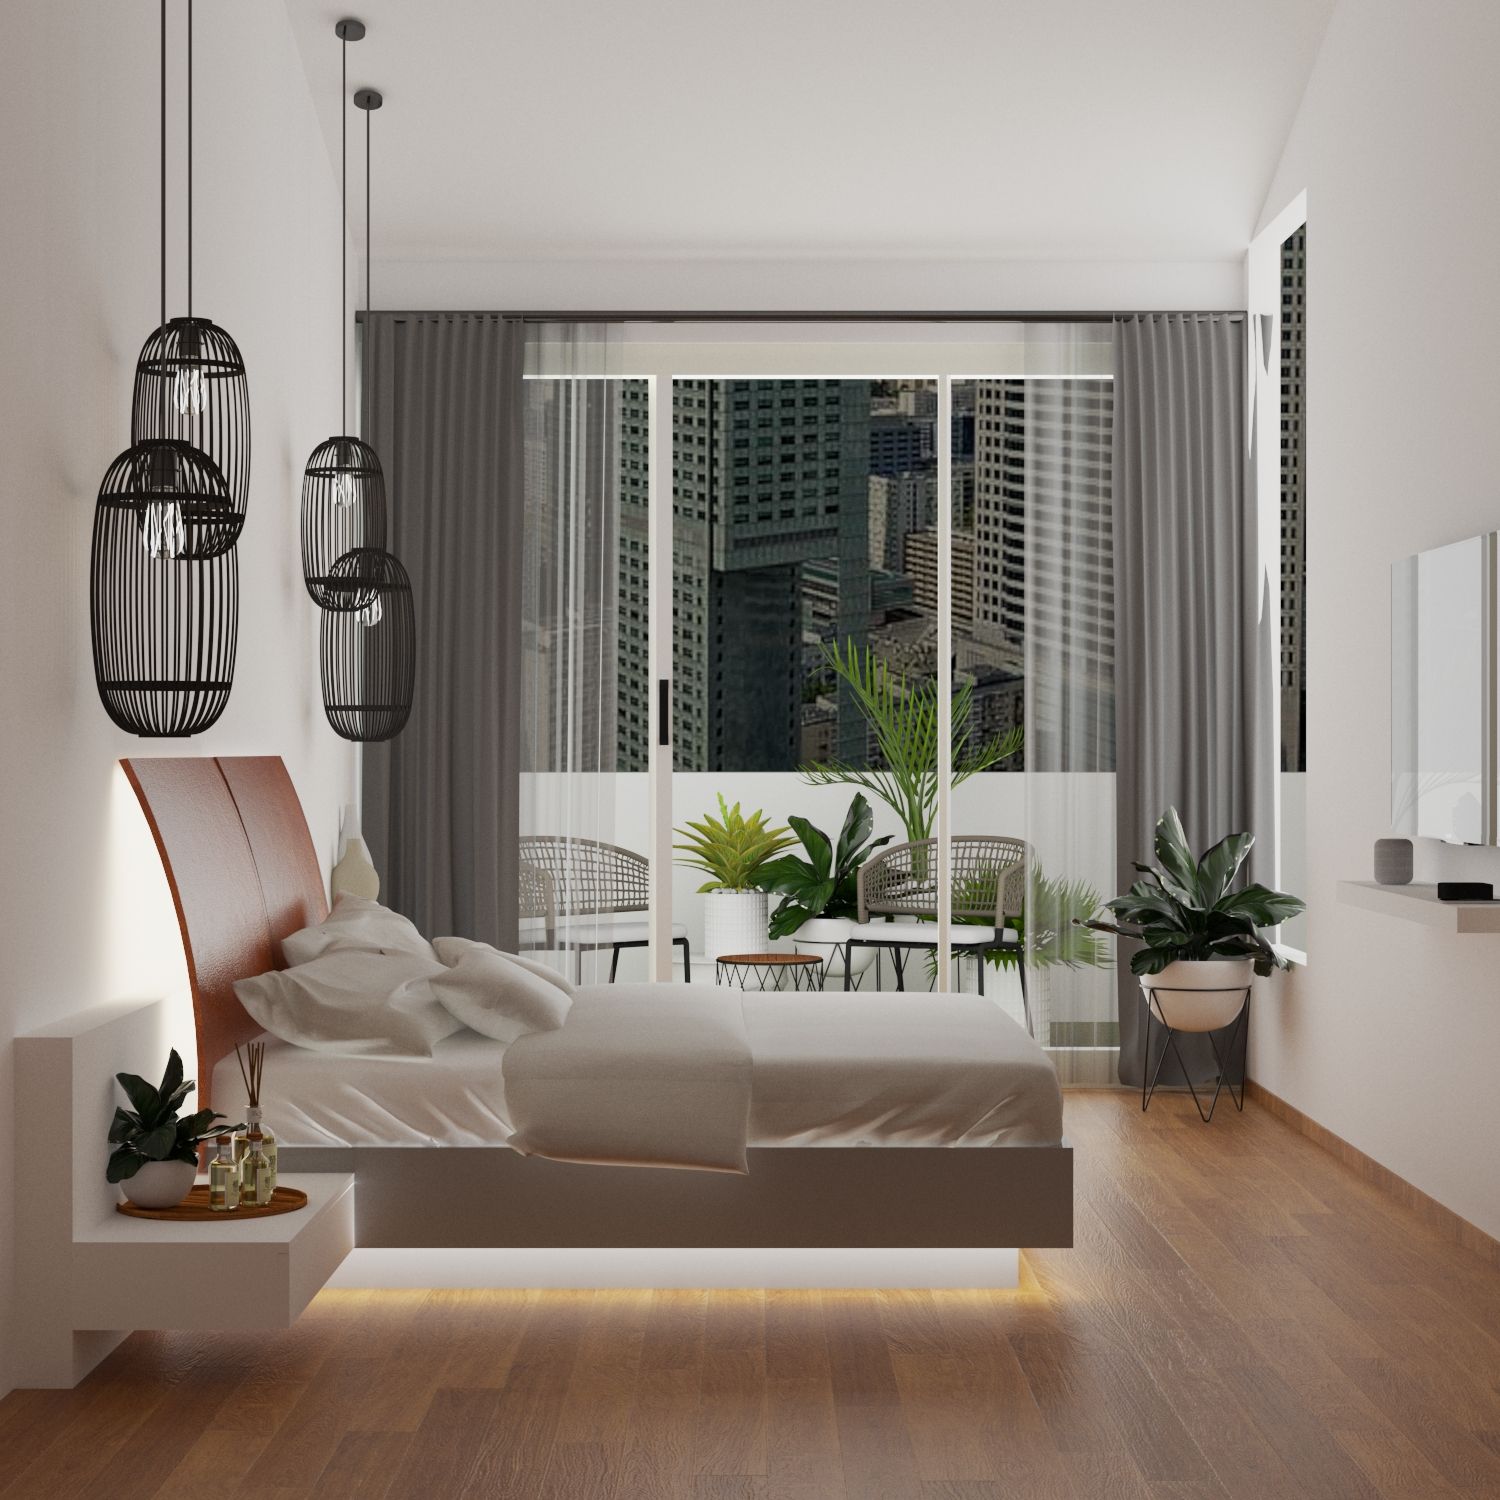 Bedroom Interior Design with Dark Wooden Flooring